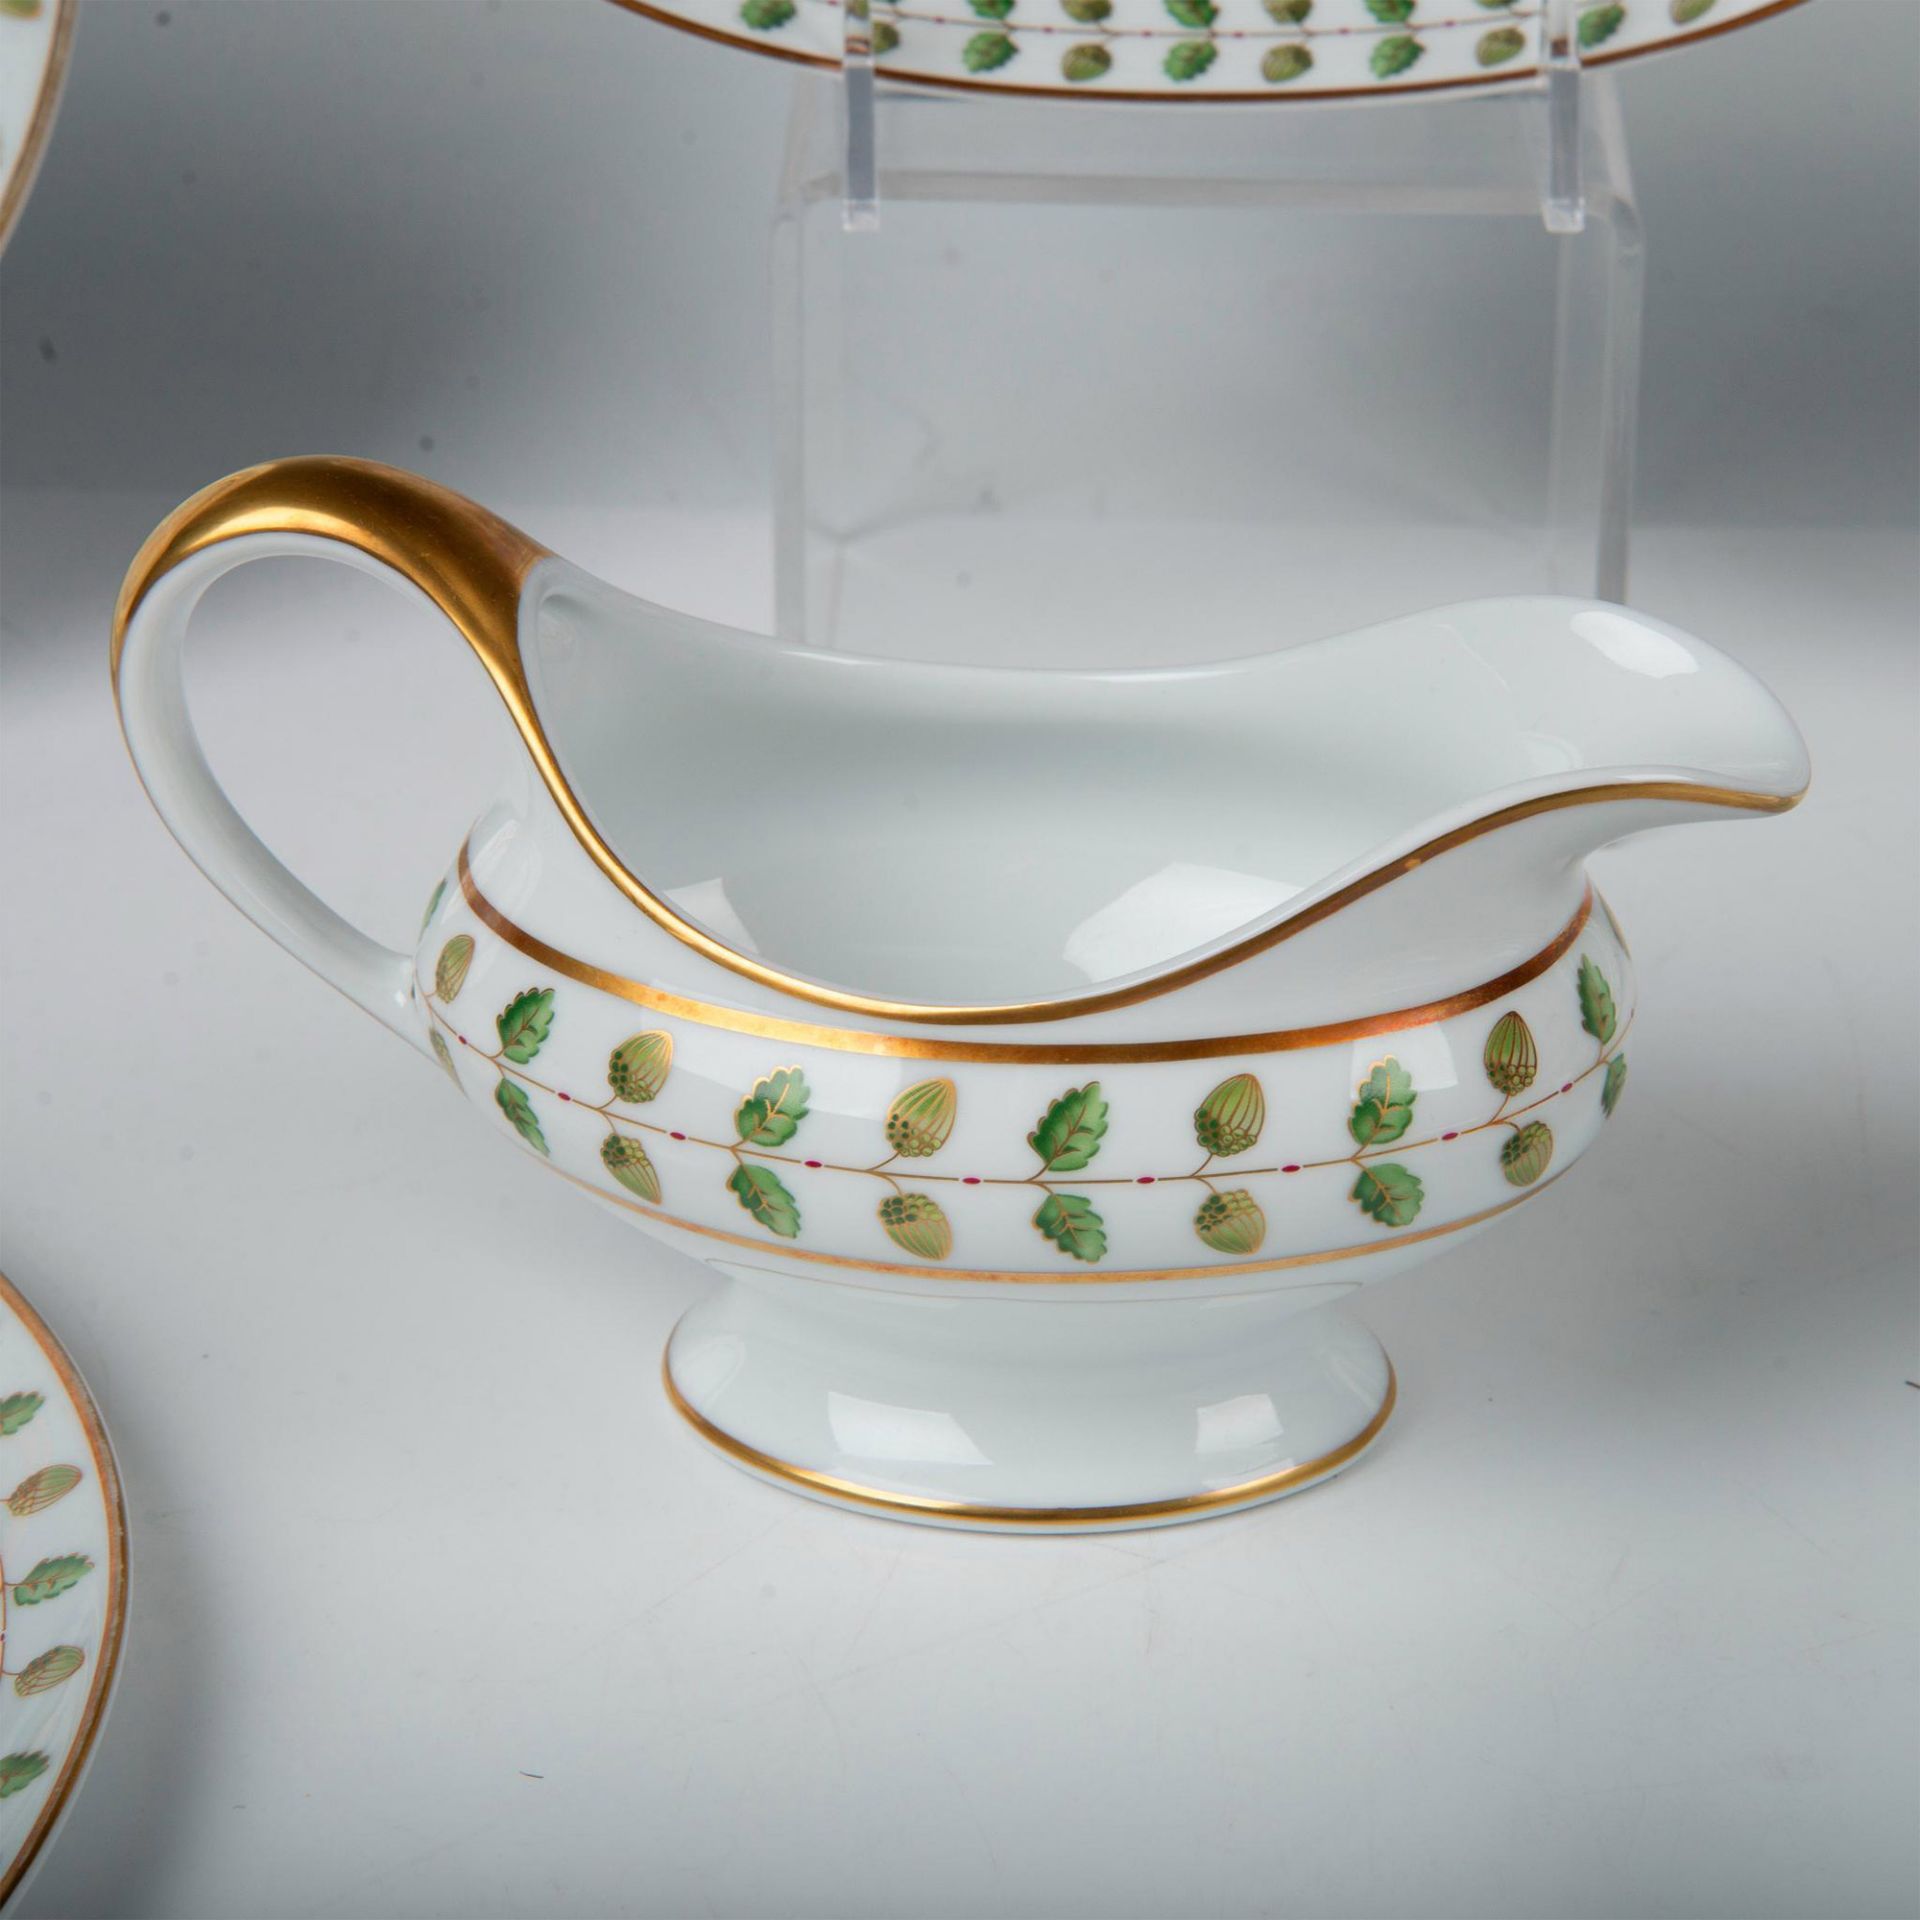 6pc Bernardaud Limoges Porcelain Serving Dishes, Constance - Image 4 of 5